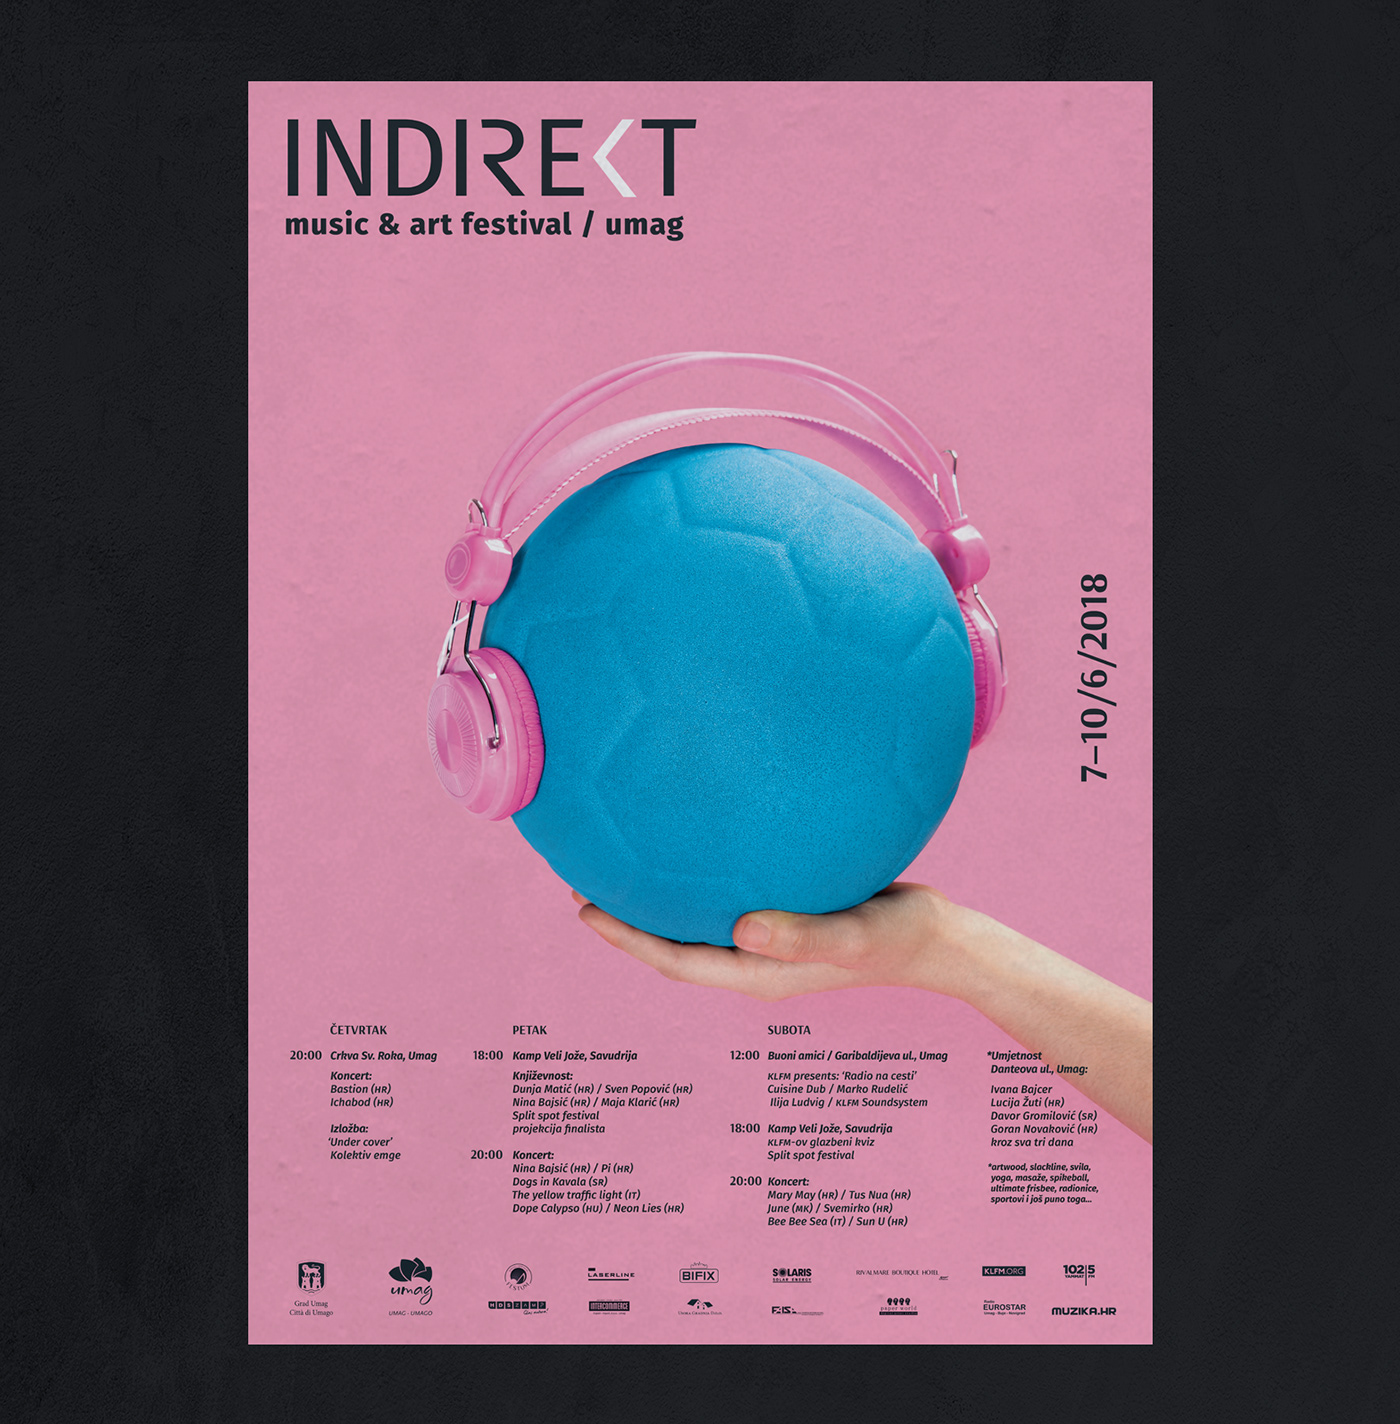 festivaldesign musicfestival indie music print poster festival